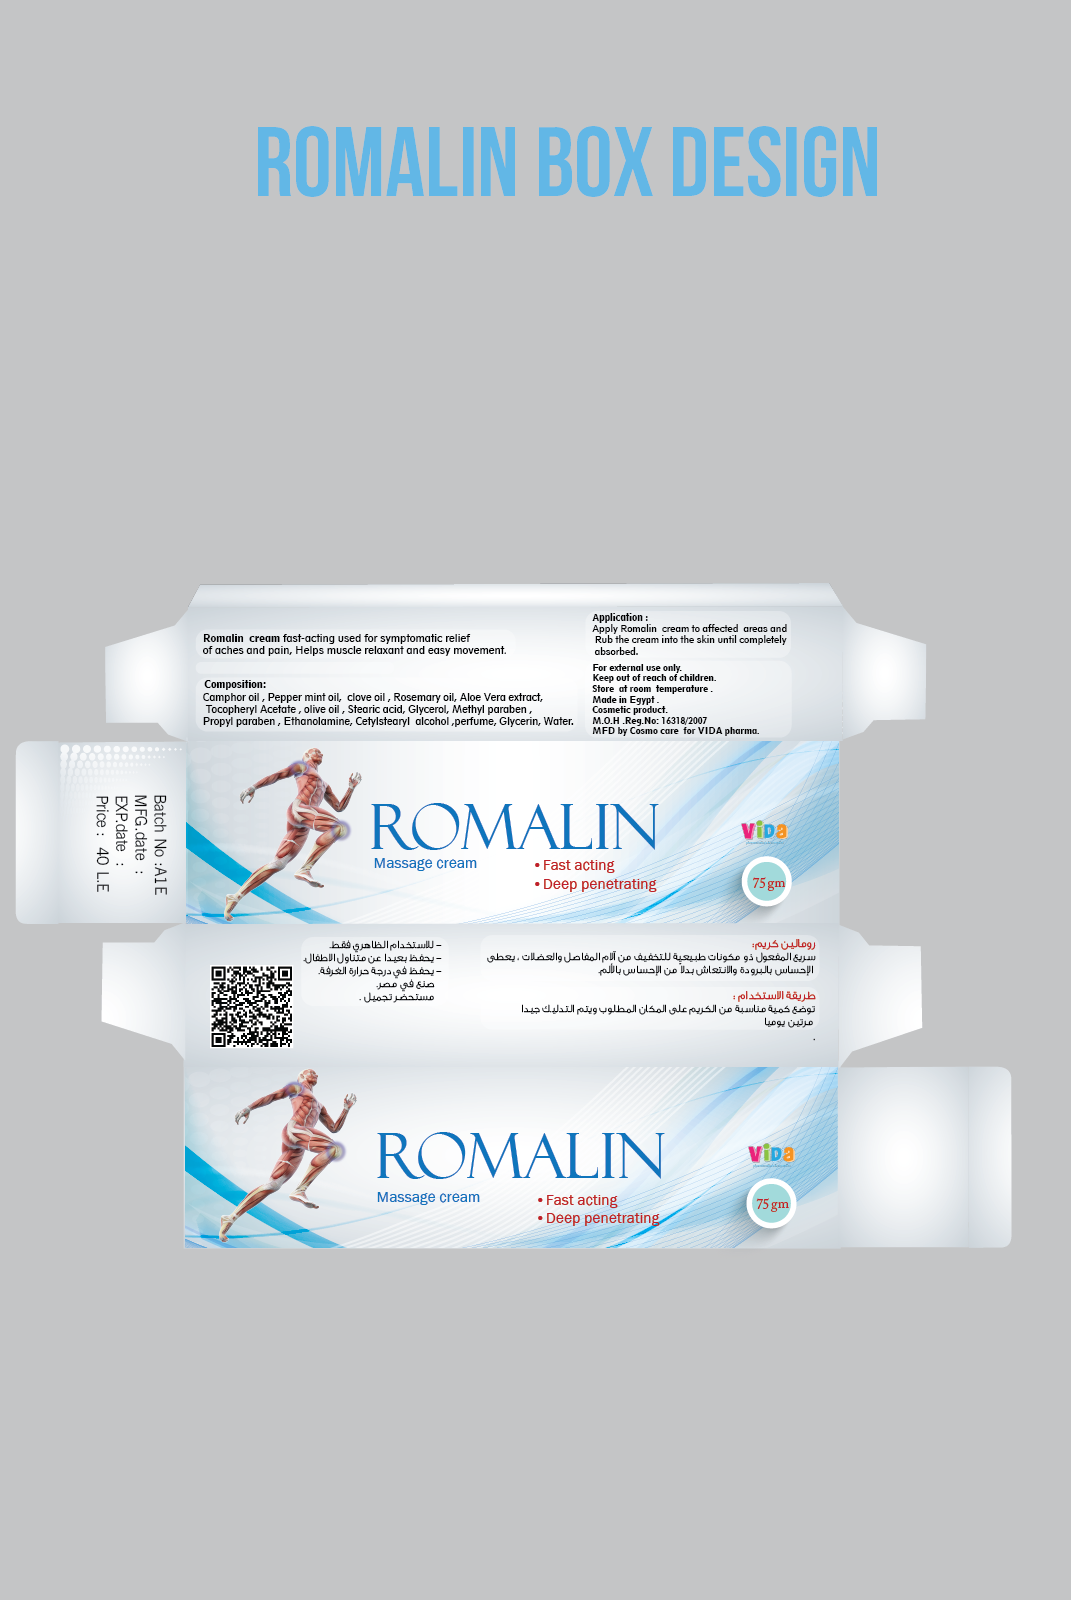 package massage marketing   digital marketing social media romalin design